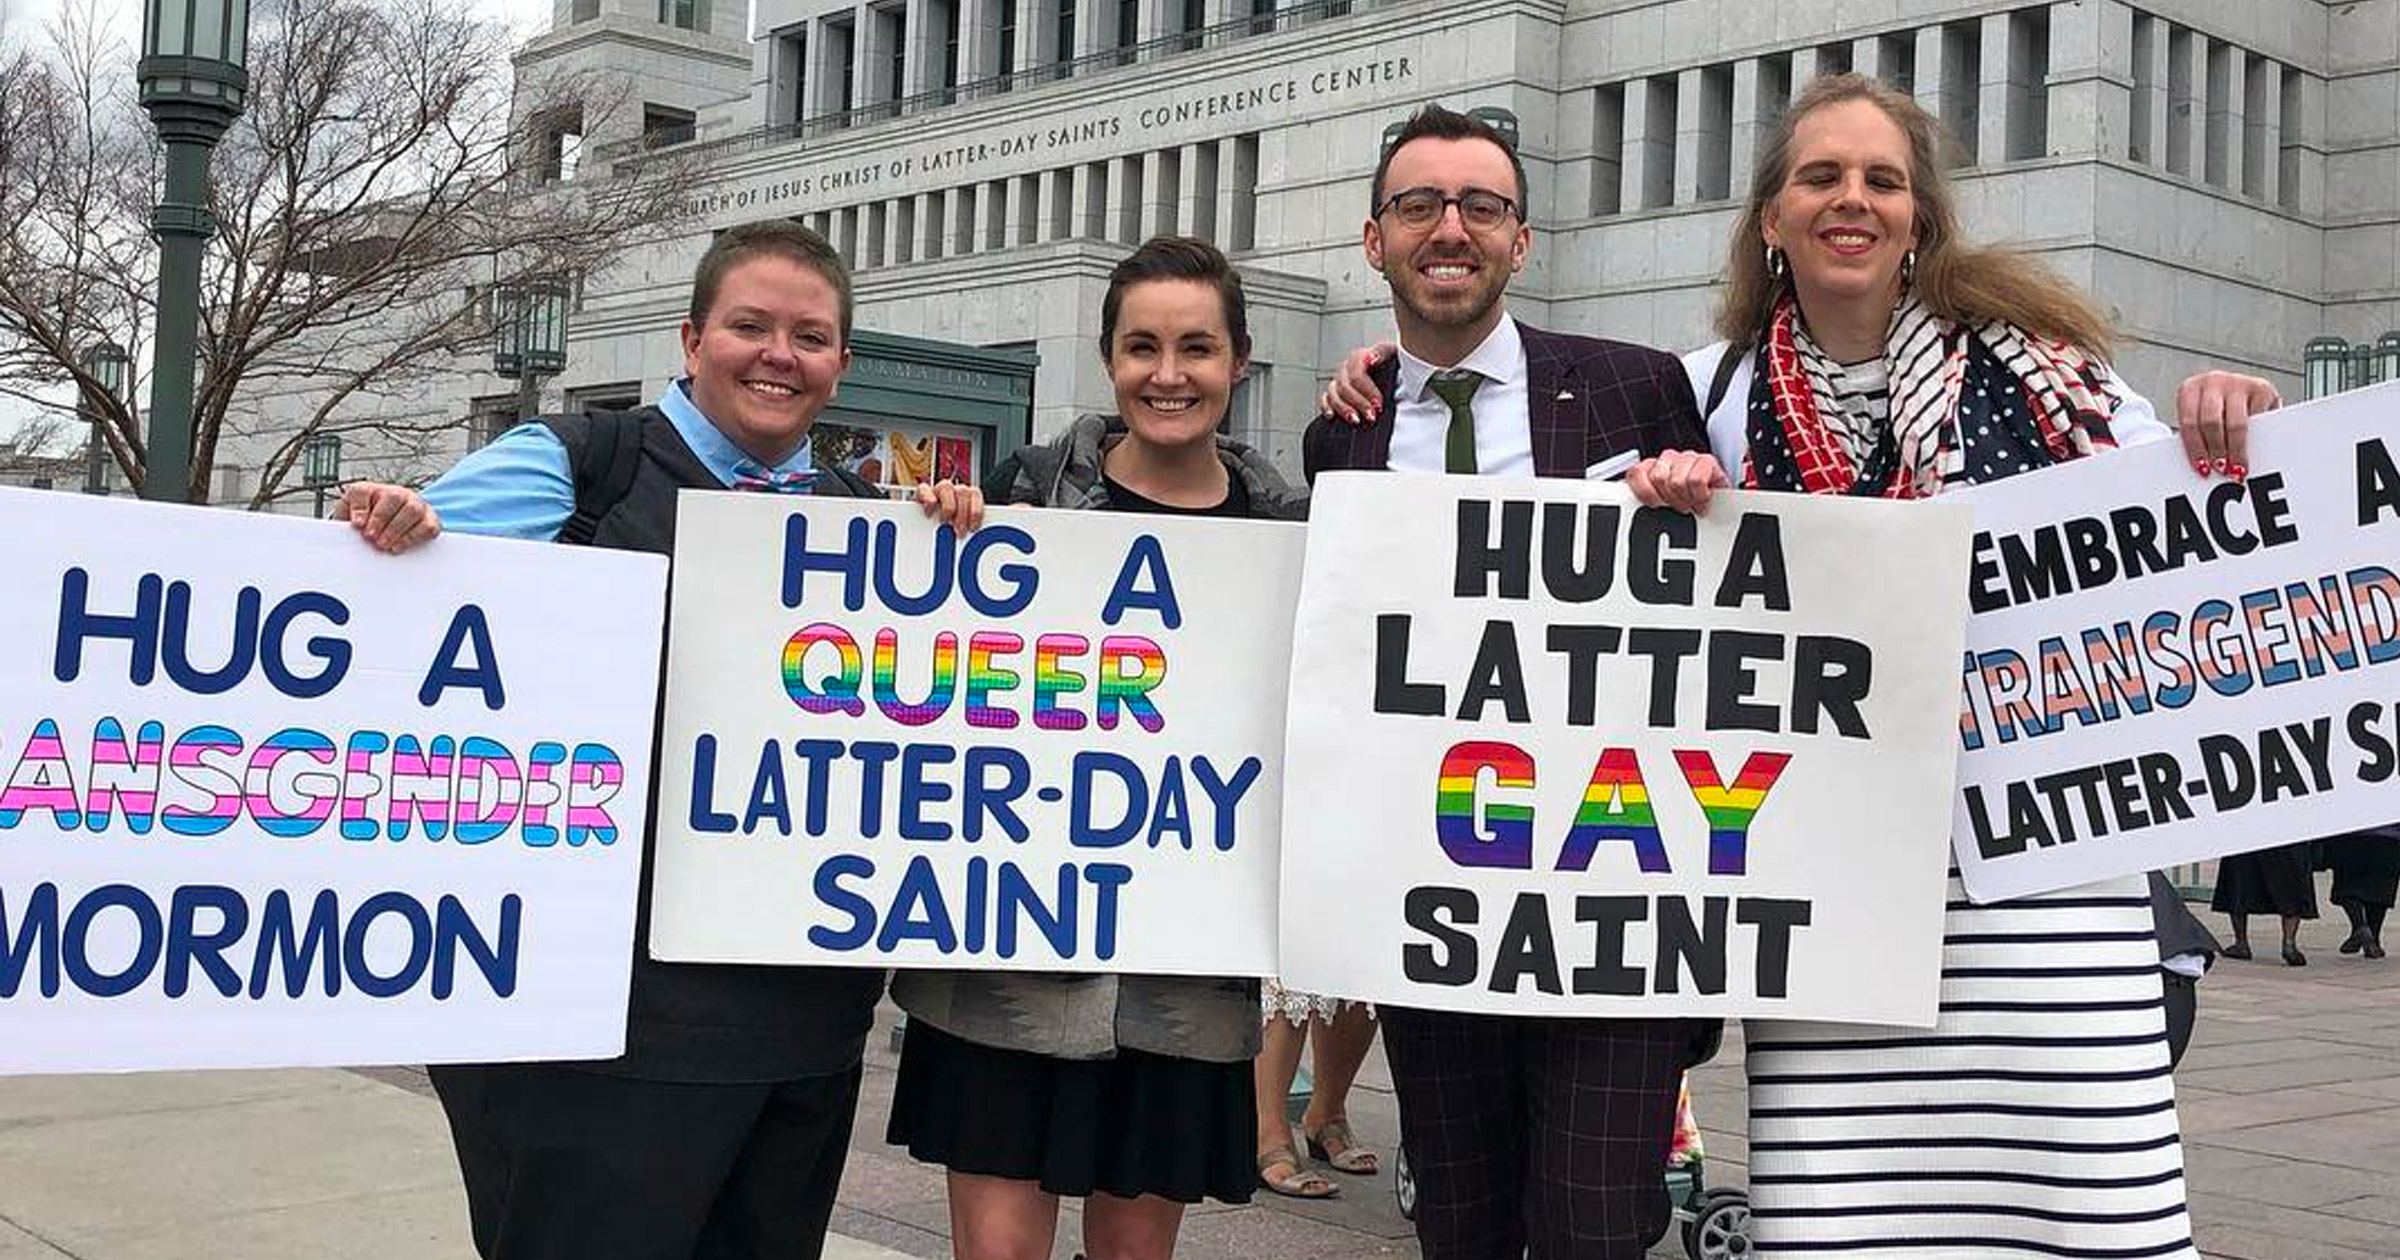 Peter Moosman abraçou um último santo gay